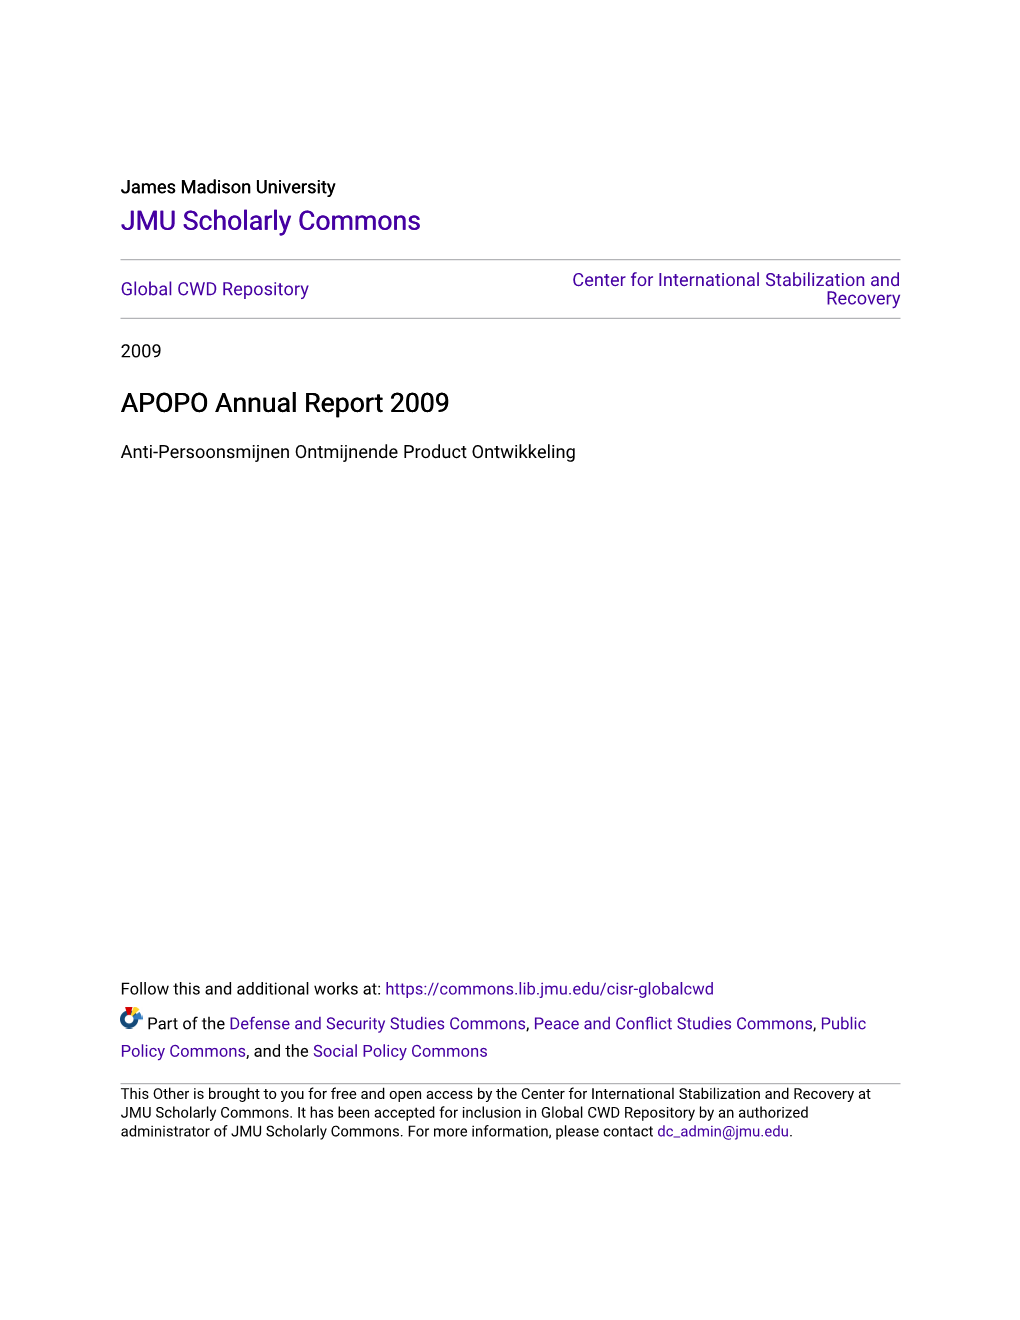 APOPO Annual Report 2009